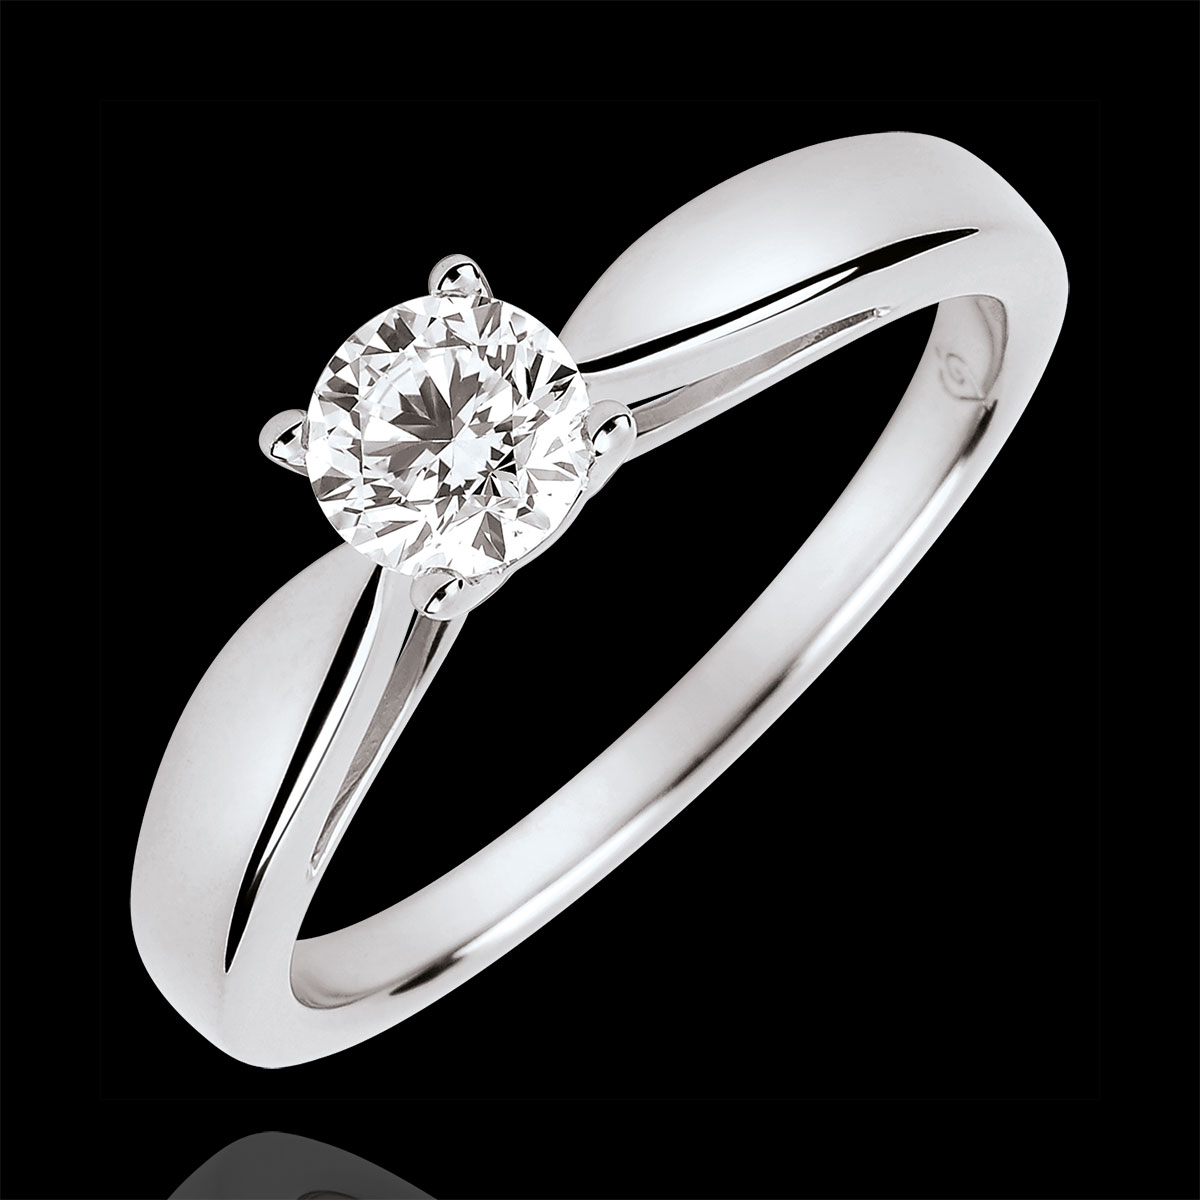 Orovi Anillo de compromiso solitario para mujer de oro blanco 375 con diamantes de talla brillante de 0,05 quilates y esmeralda de 0,11 quilates